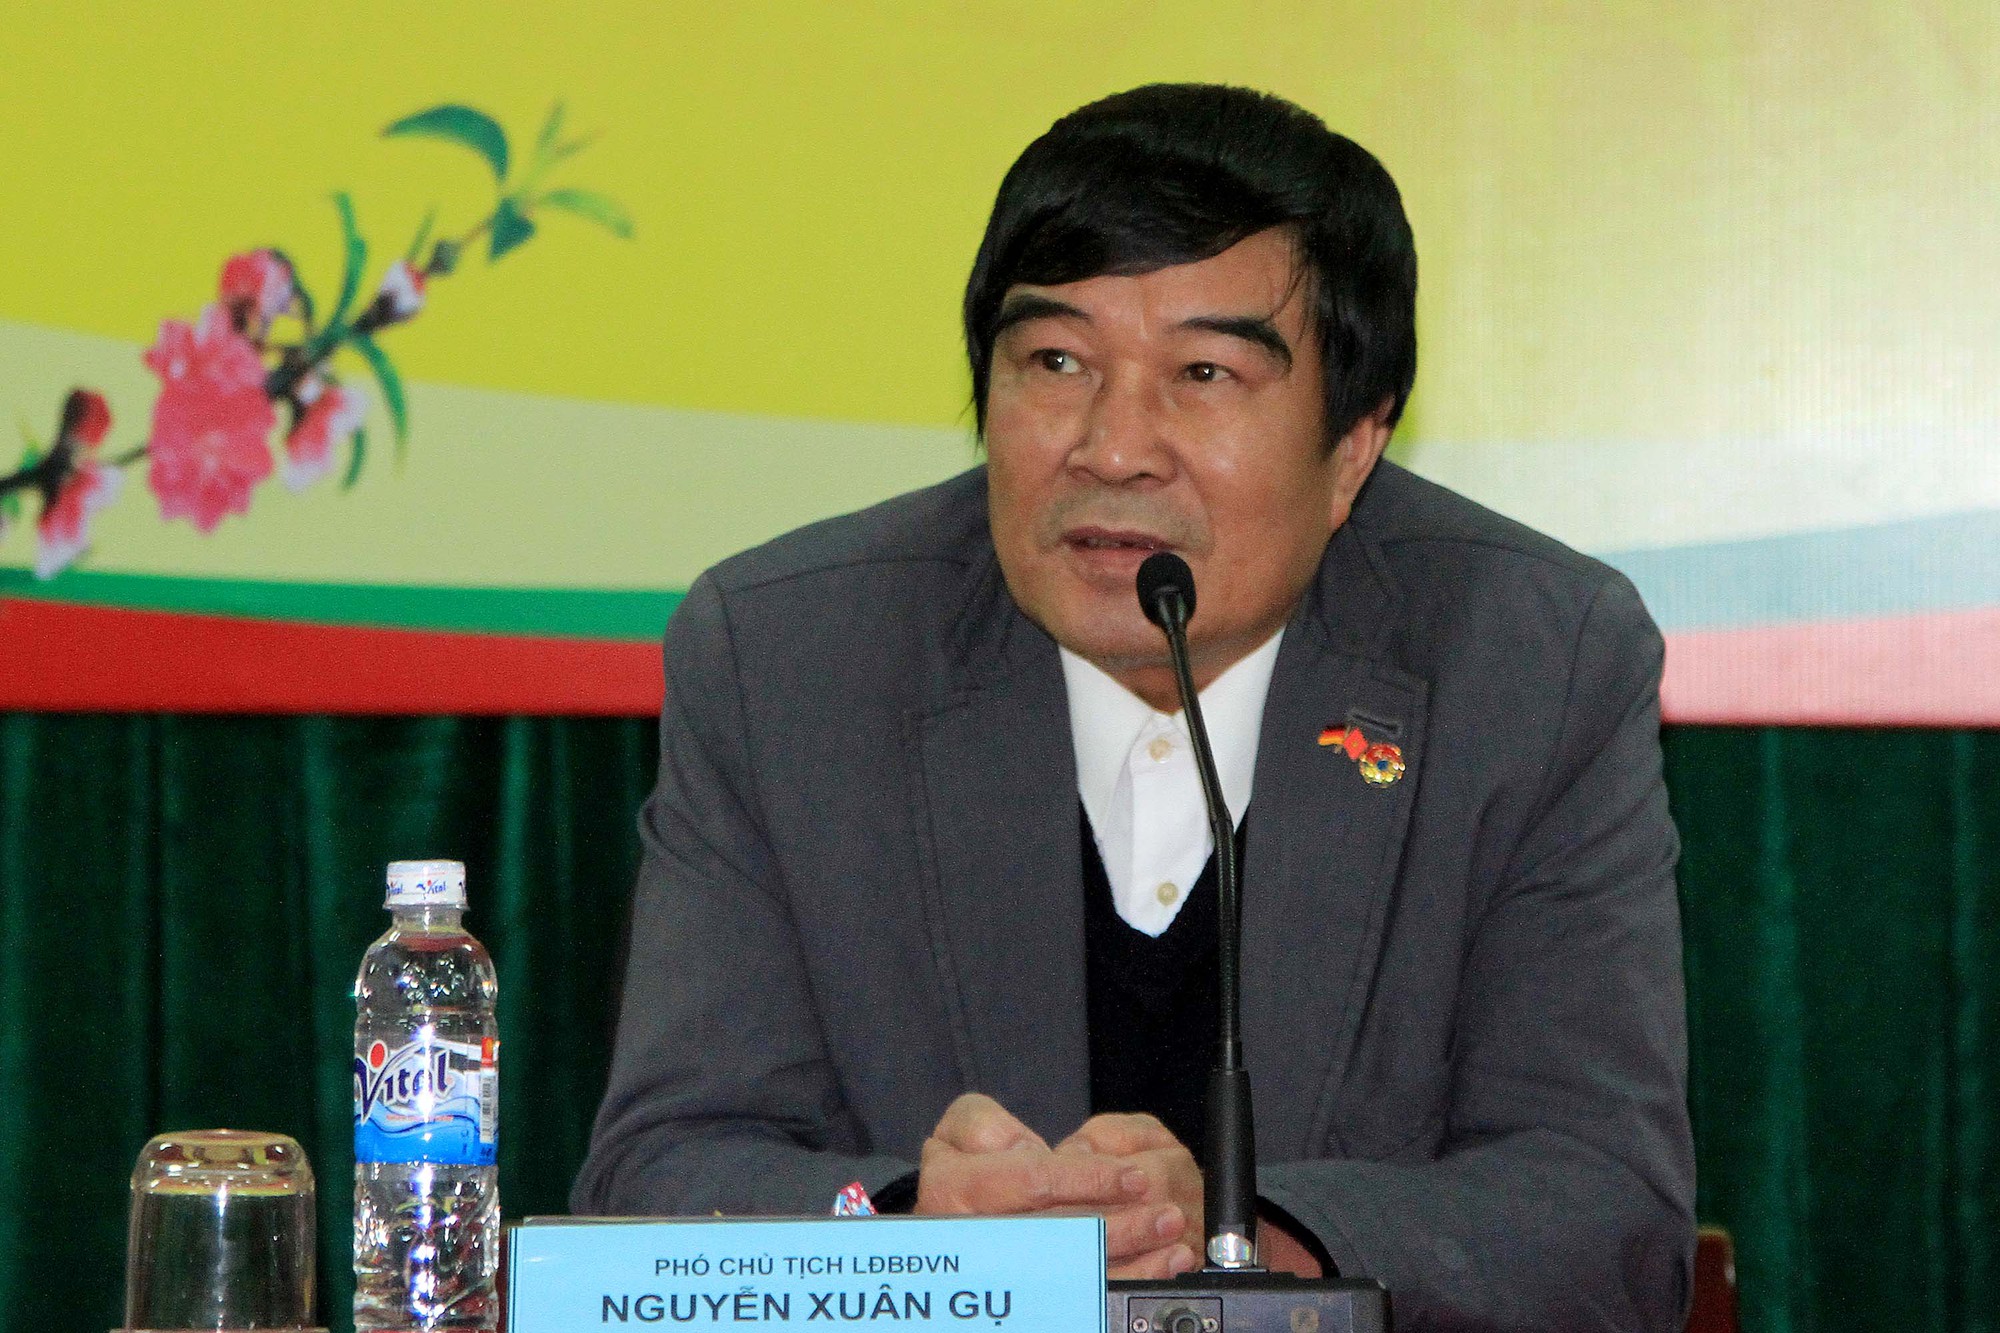 Ông Nguyễn Xuân Gụ nộp đơn từ chức tại VFF - Ảnh 1.